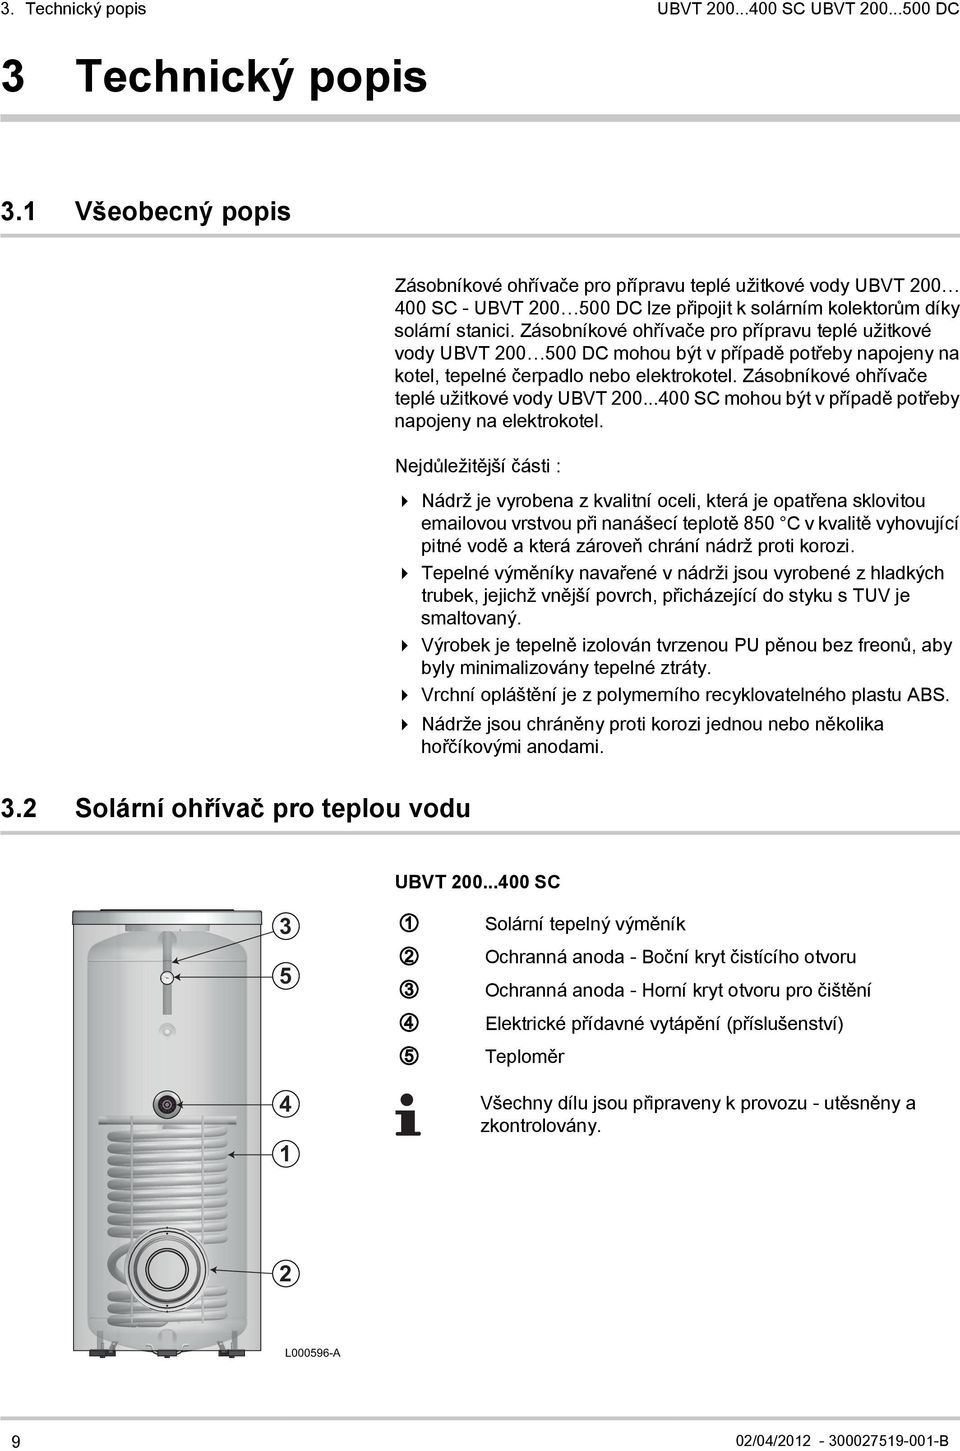 Zásobníkové ohřívače pro přípravu teplé užitkové vody UBVT 200 500 DC mohou být v případě potřeby napojeny na kotel, tepelné čerpadlo nebo elektrokotel.